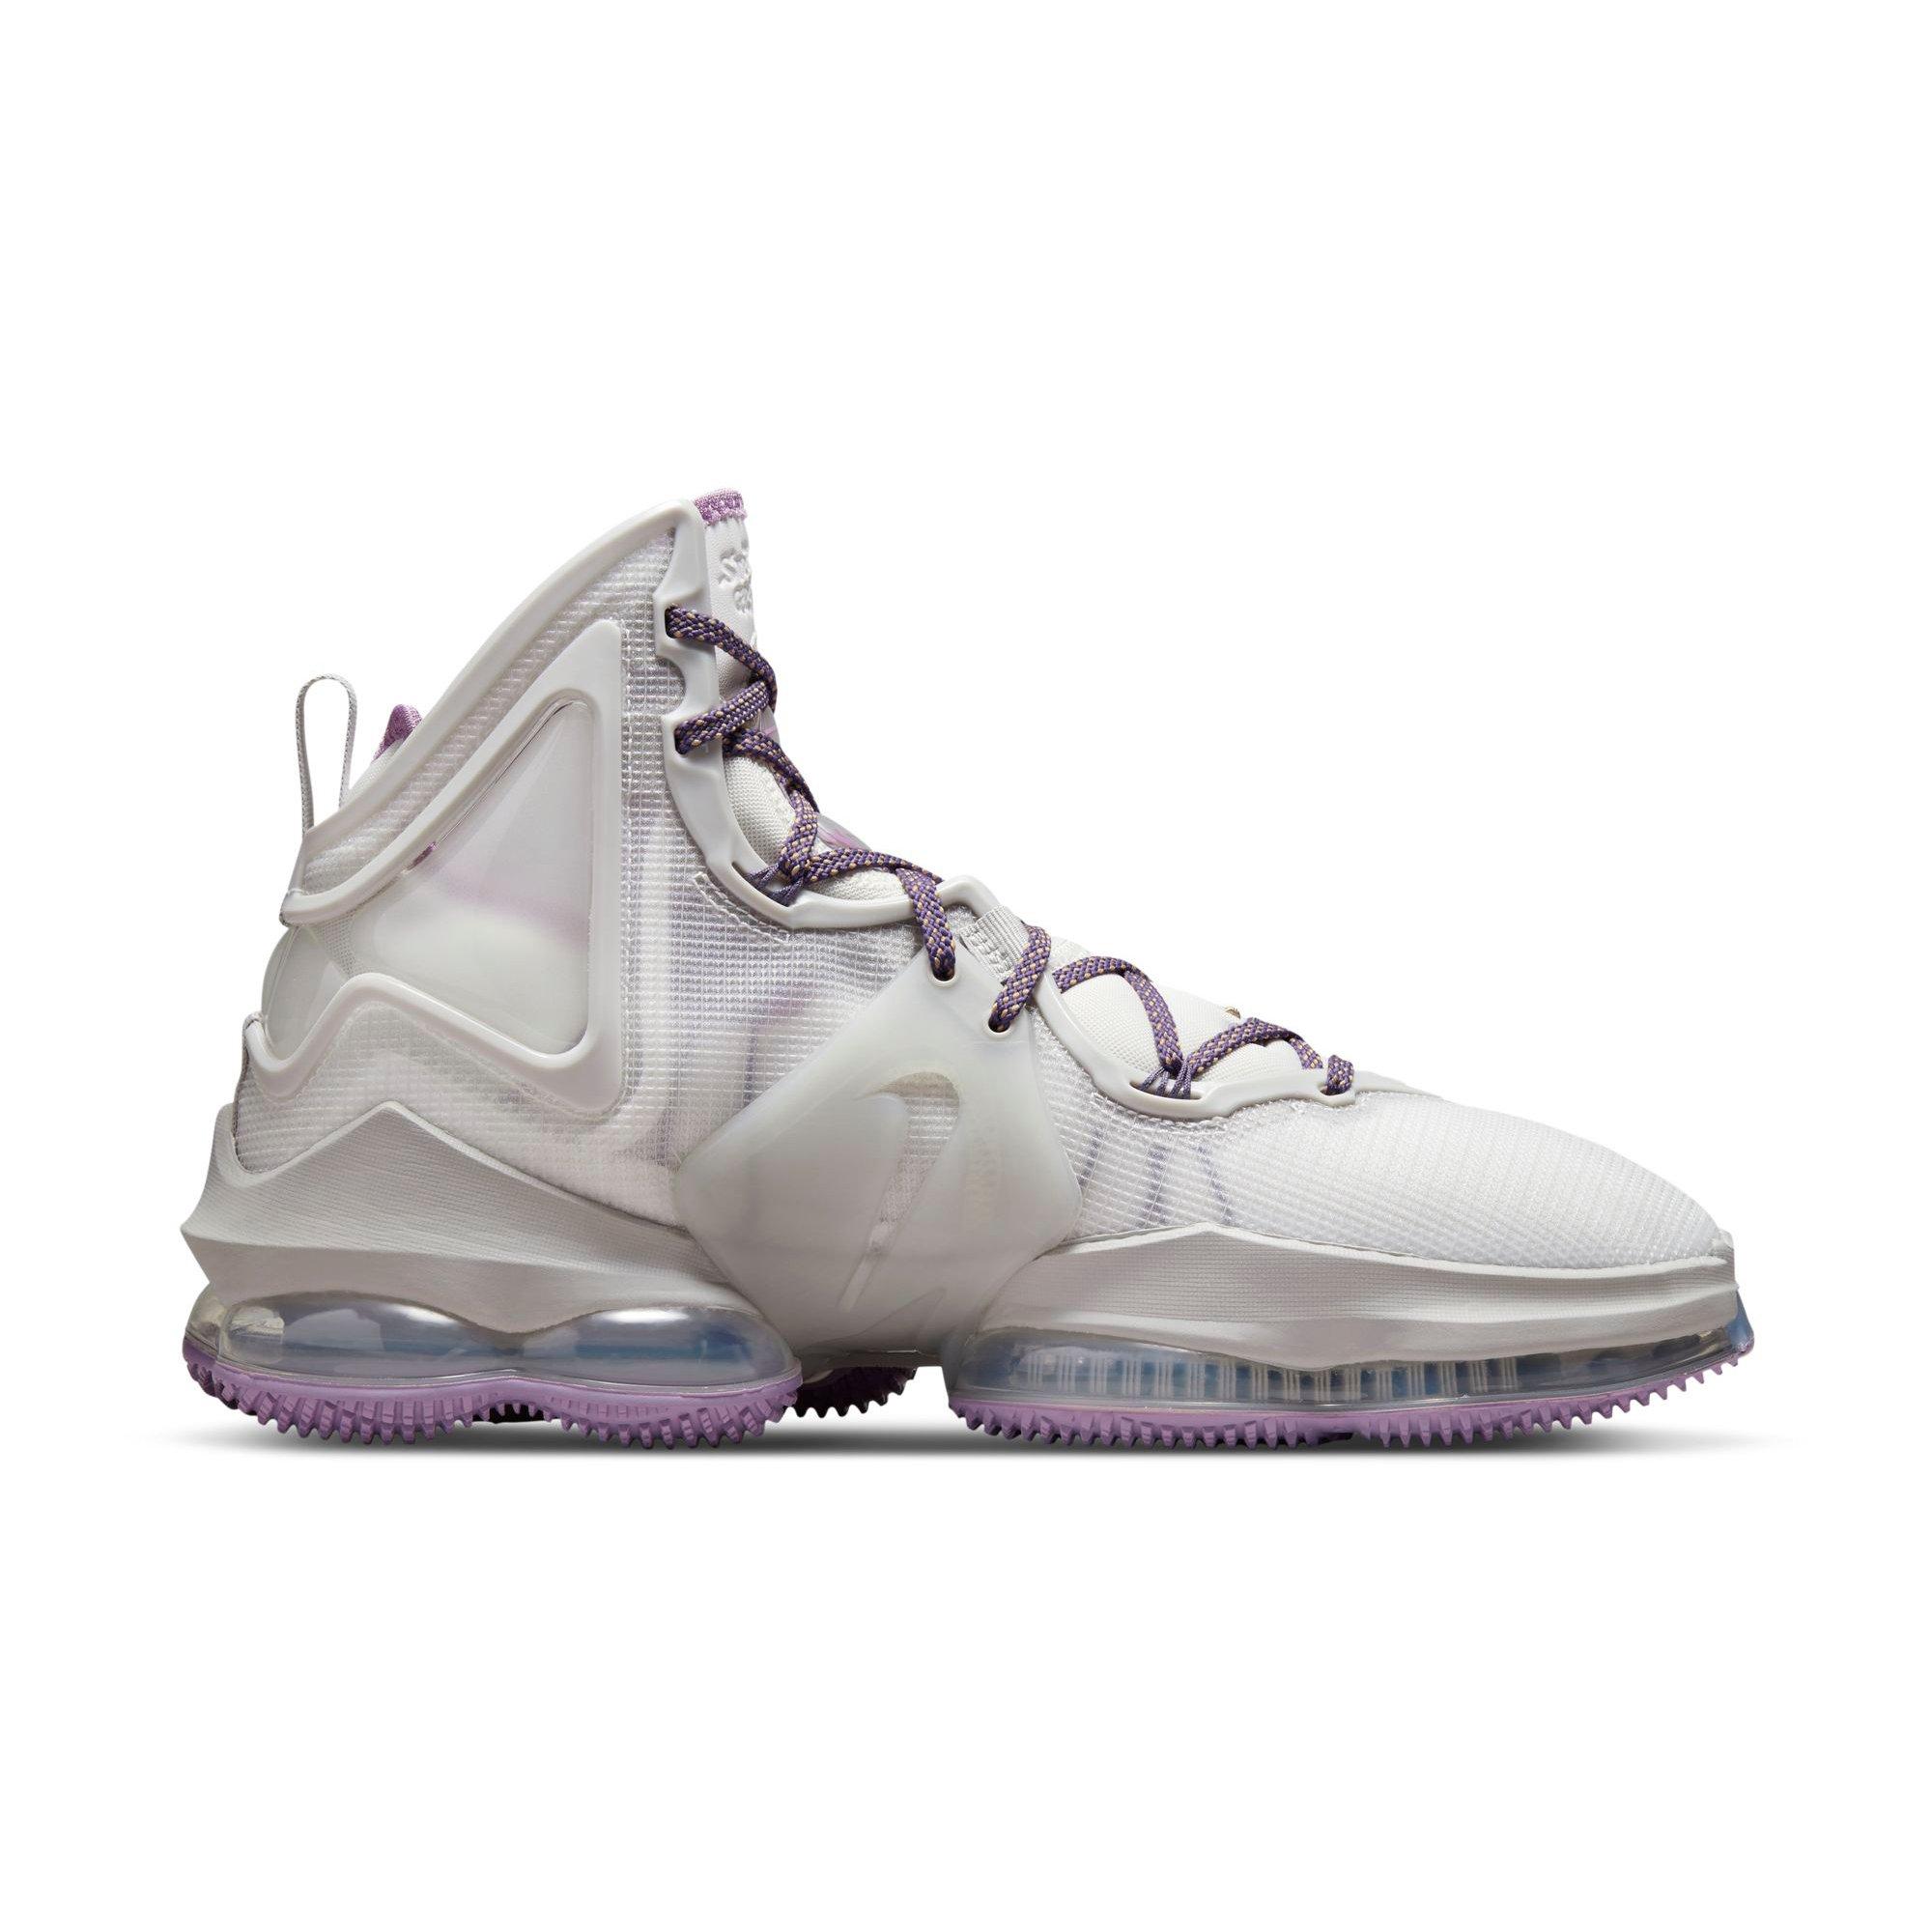 lebron james shoes 9 purple